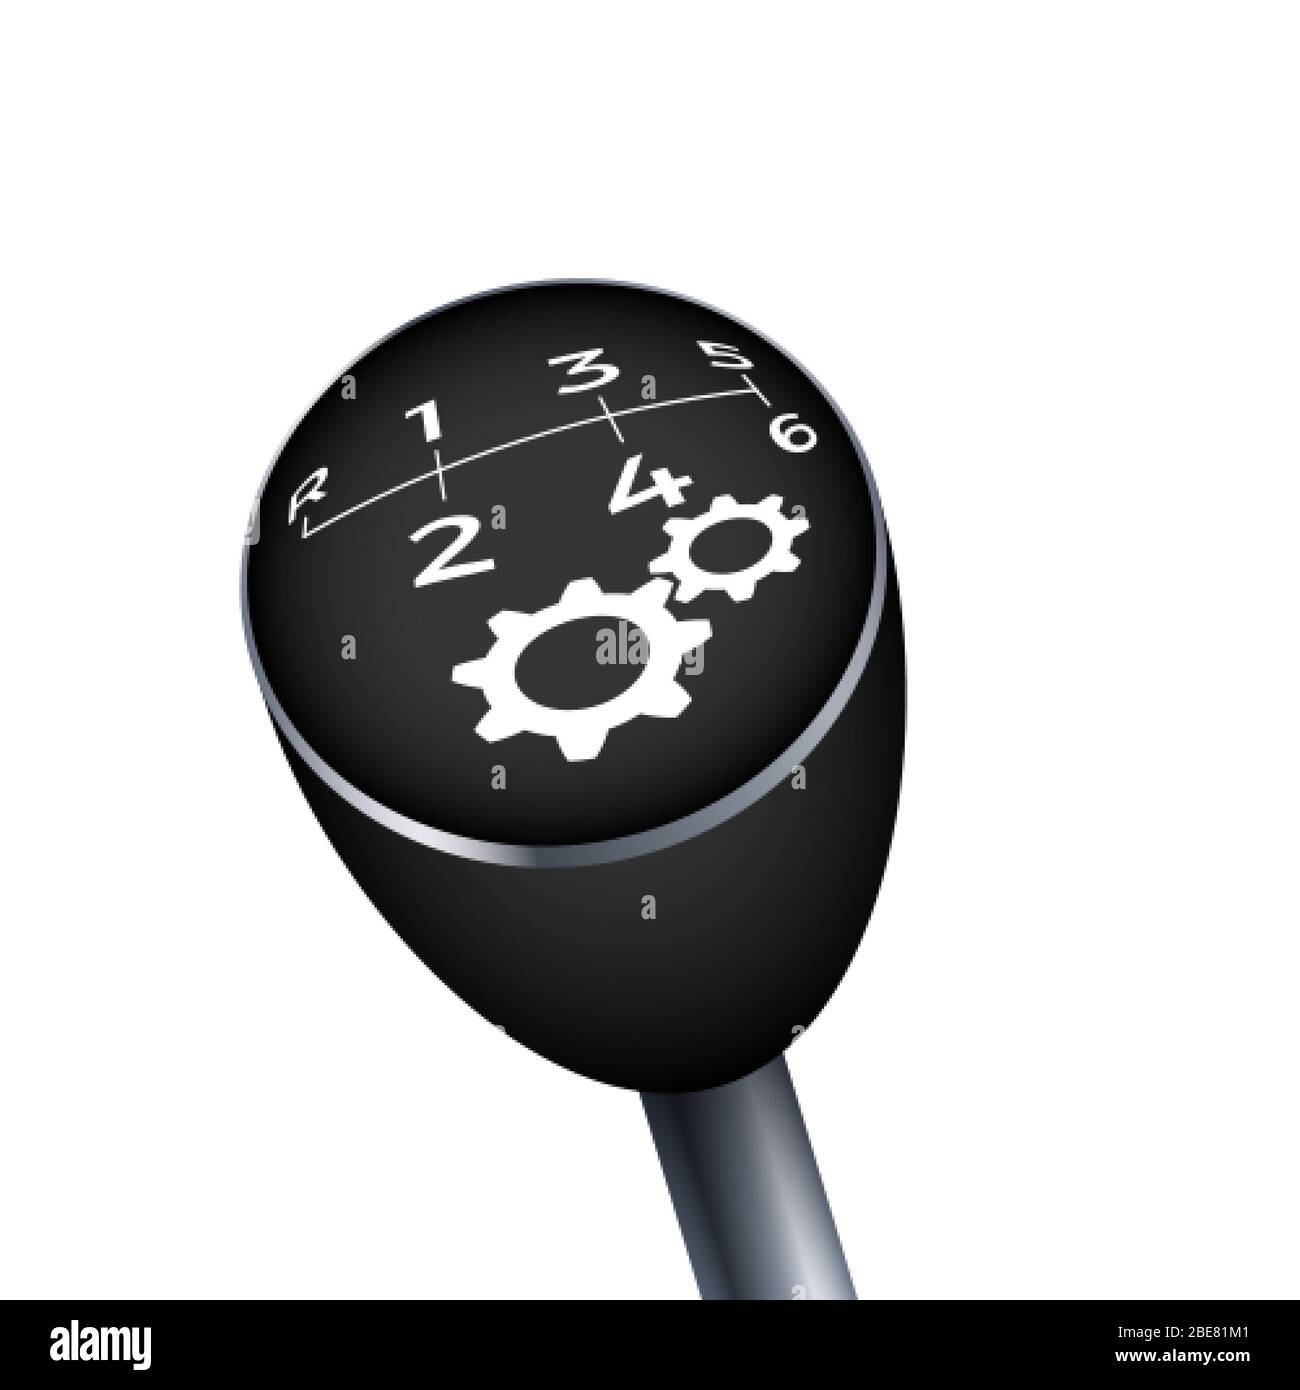 Gangknopf. Abbildung des schwarzen Getriebes. Mechanisches Autogetriebe. Vektorgrafik Stock Vektor